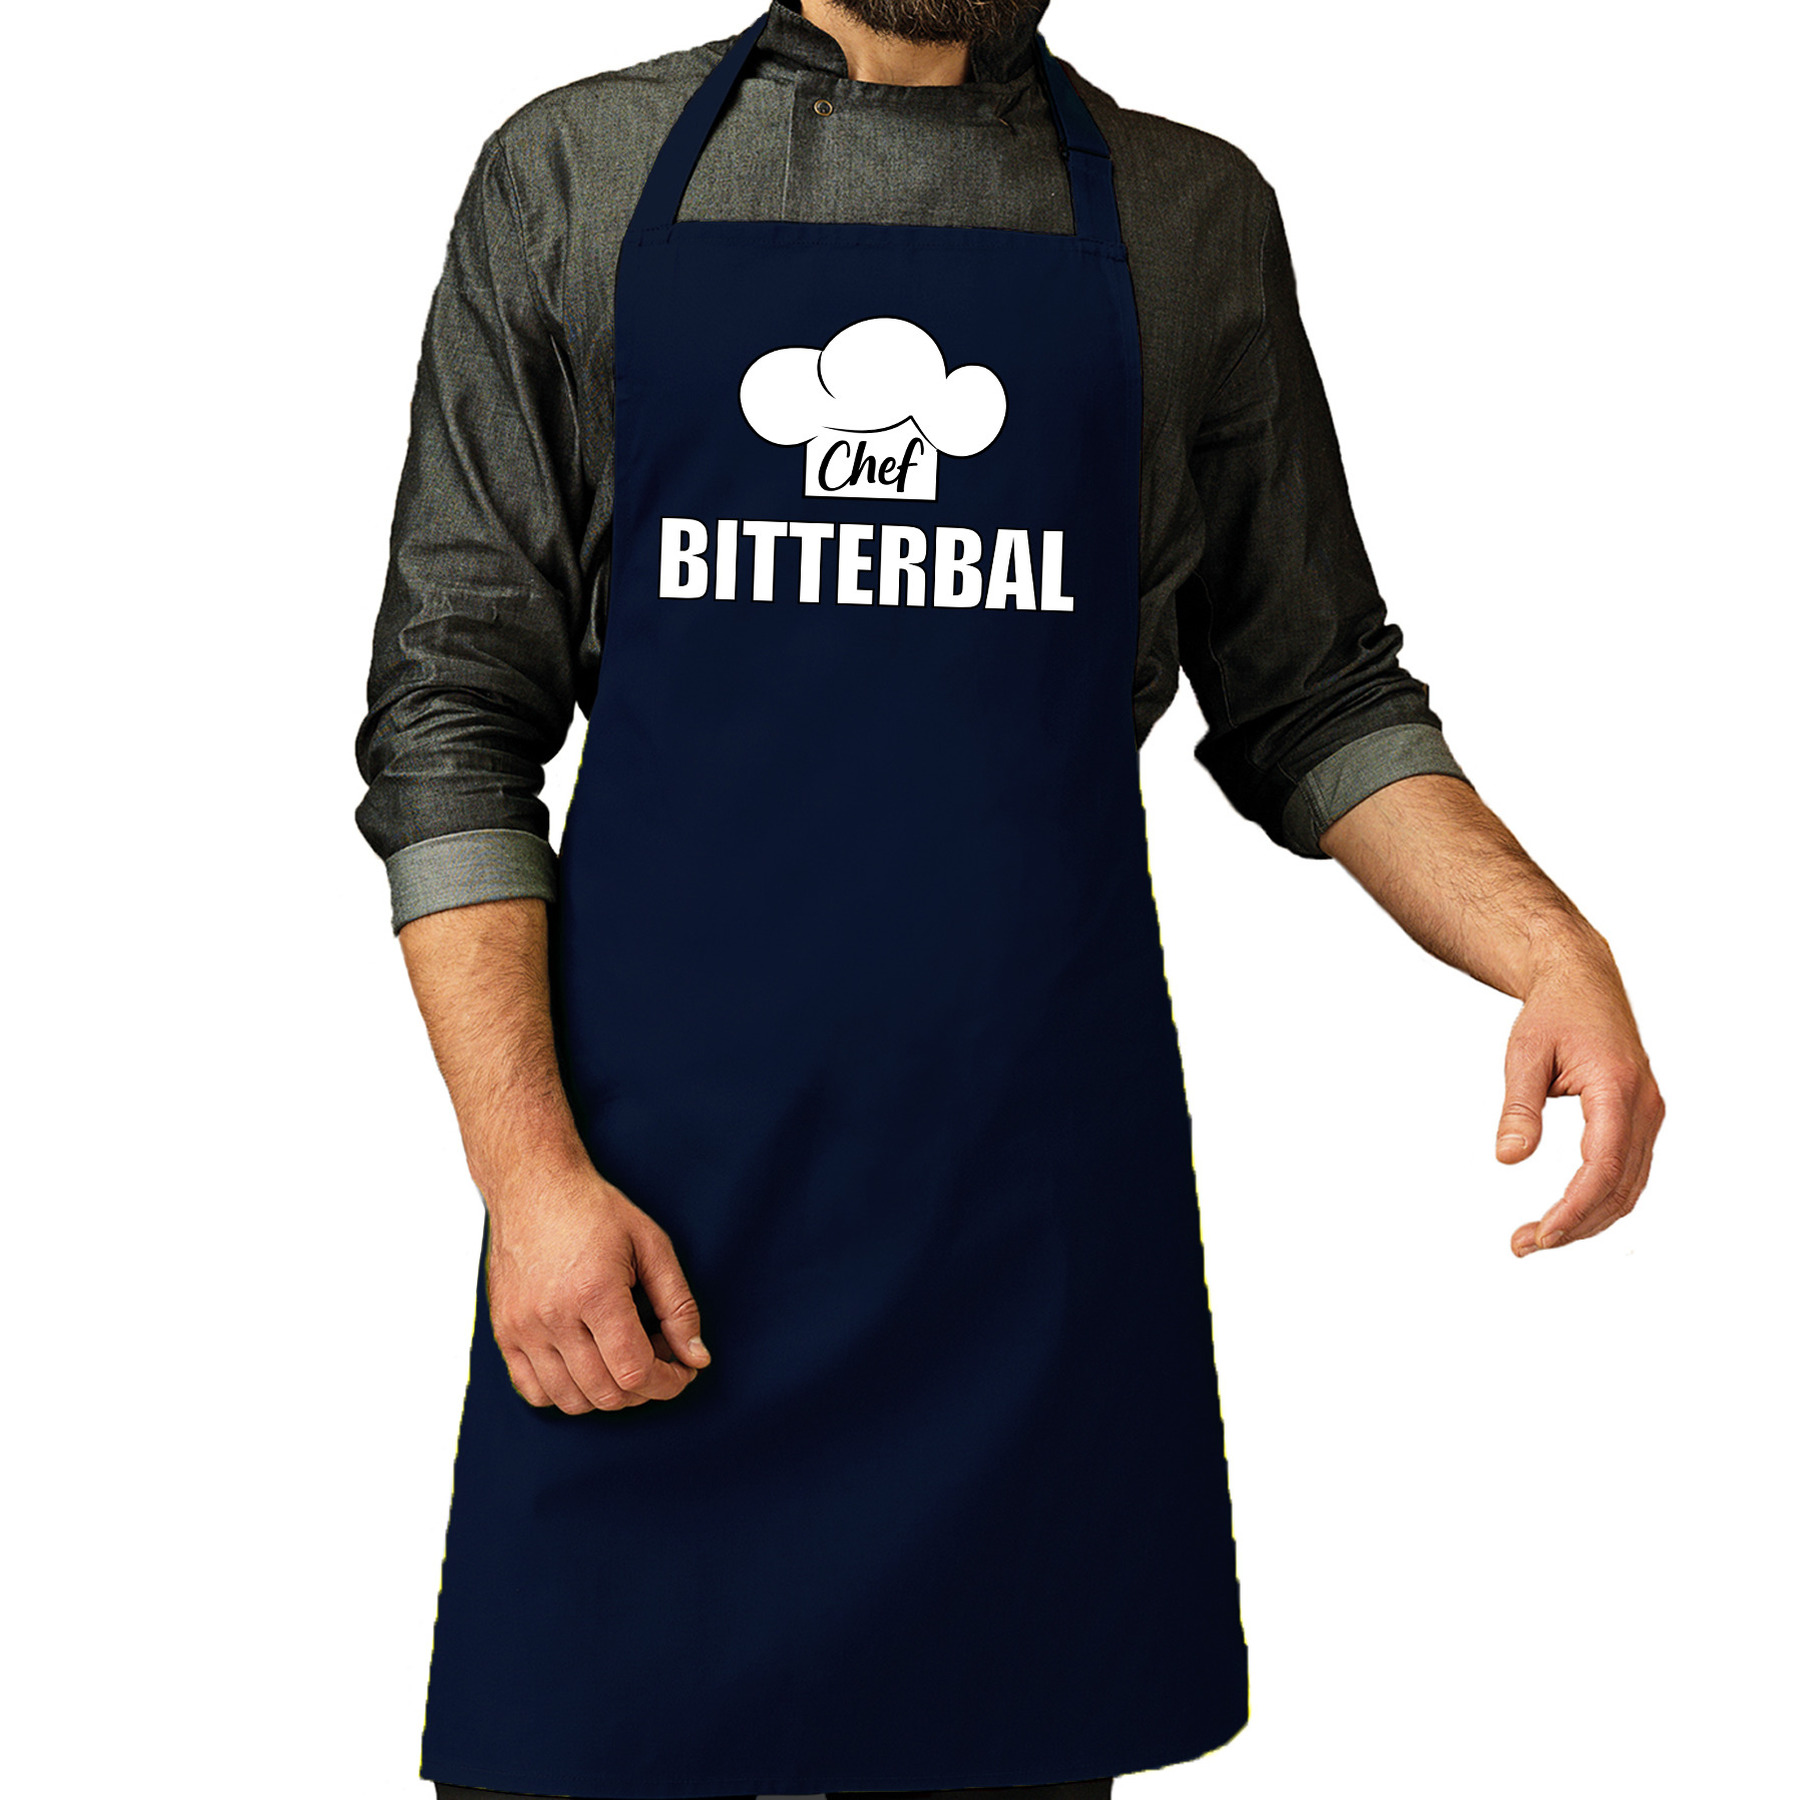 Chef bitterbal schort - keukenschort navy heren